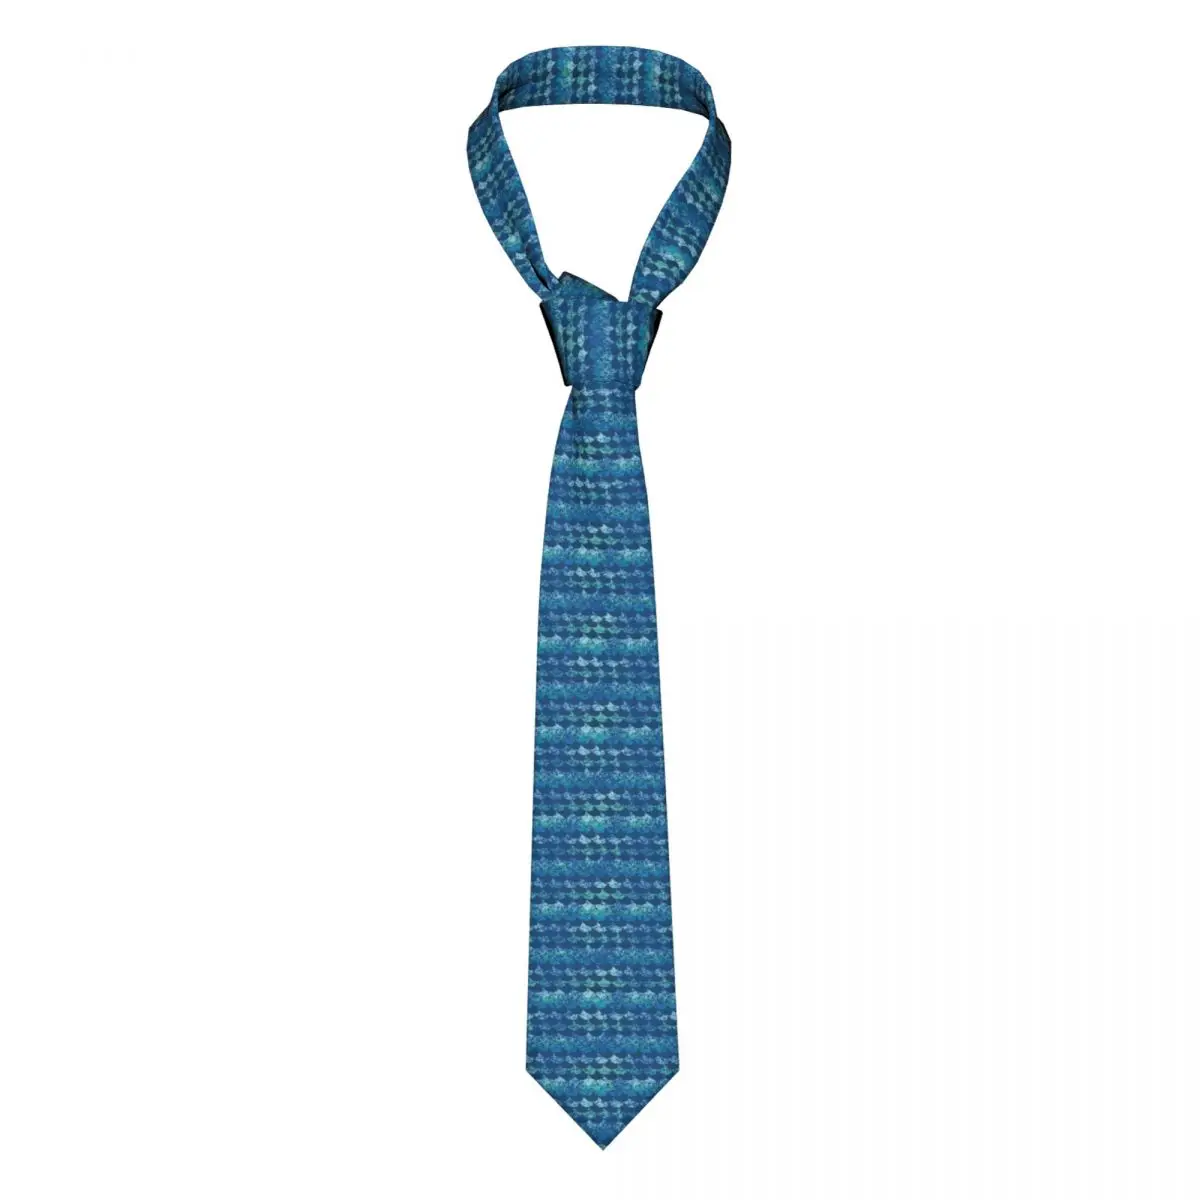 

Mens Tie Classic Skinny Blue Ocean Waves Print Neckties Narrow Collar Slim Casual Tie Accessories Gift